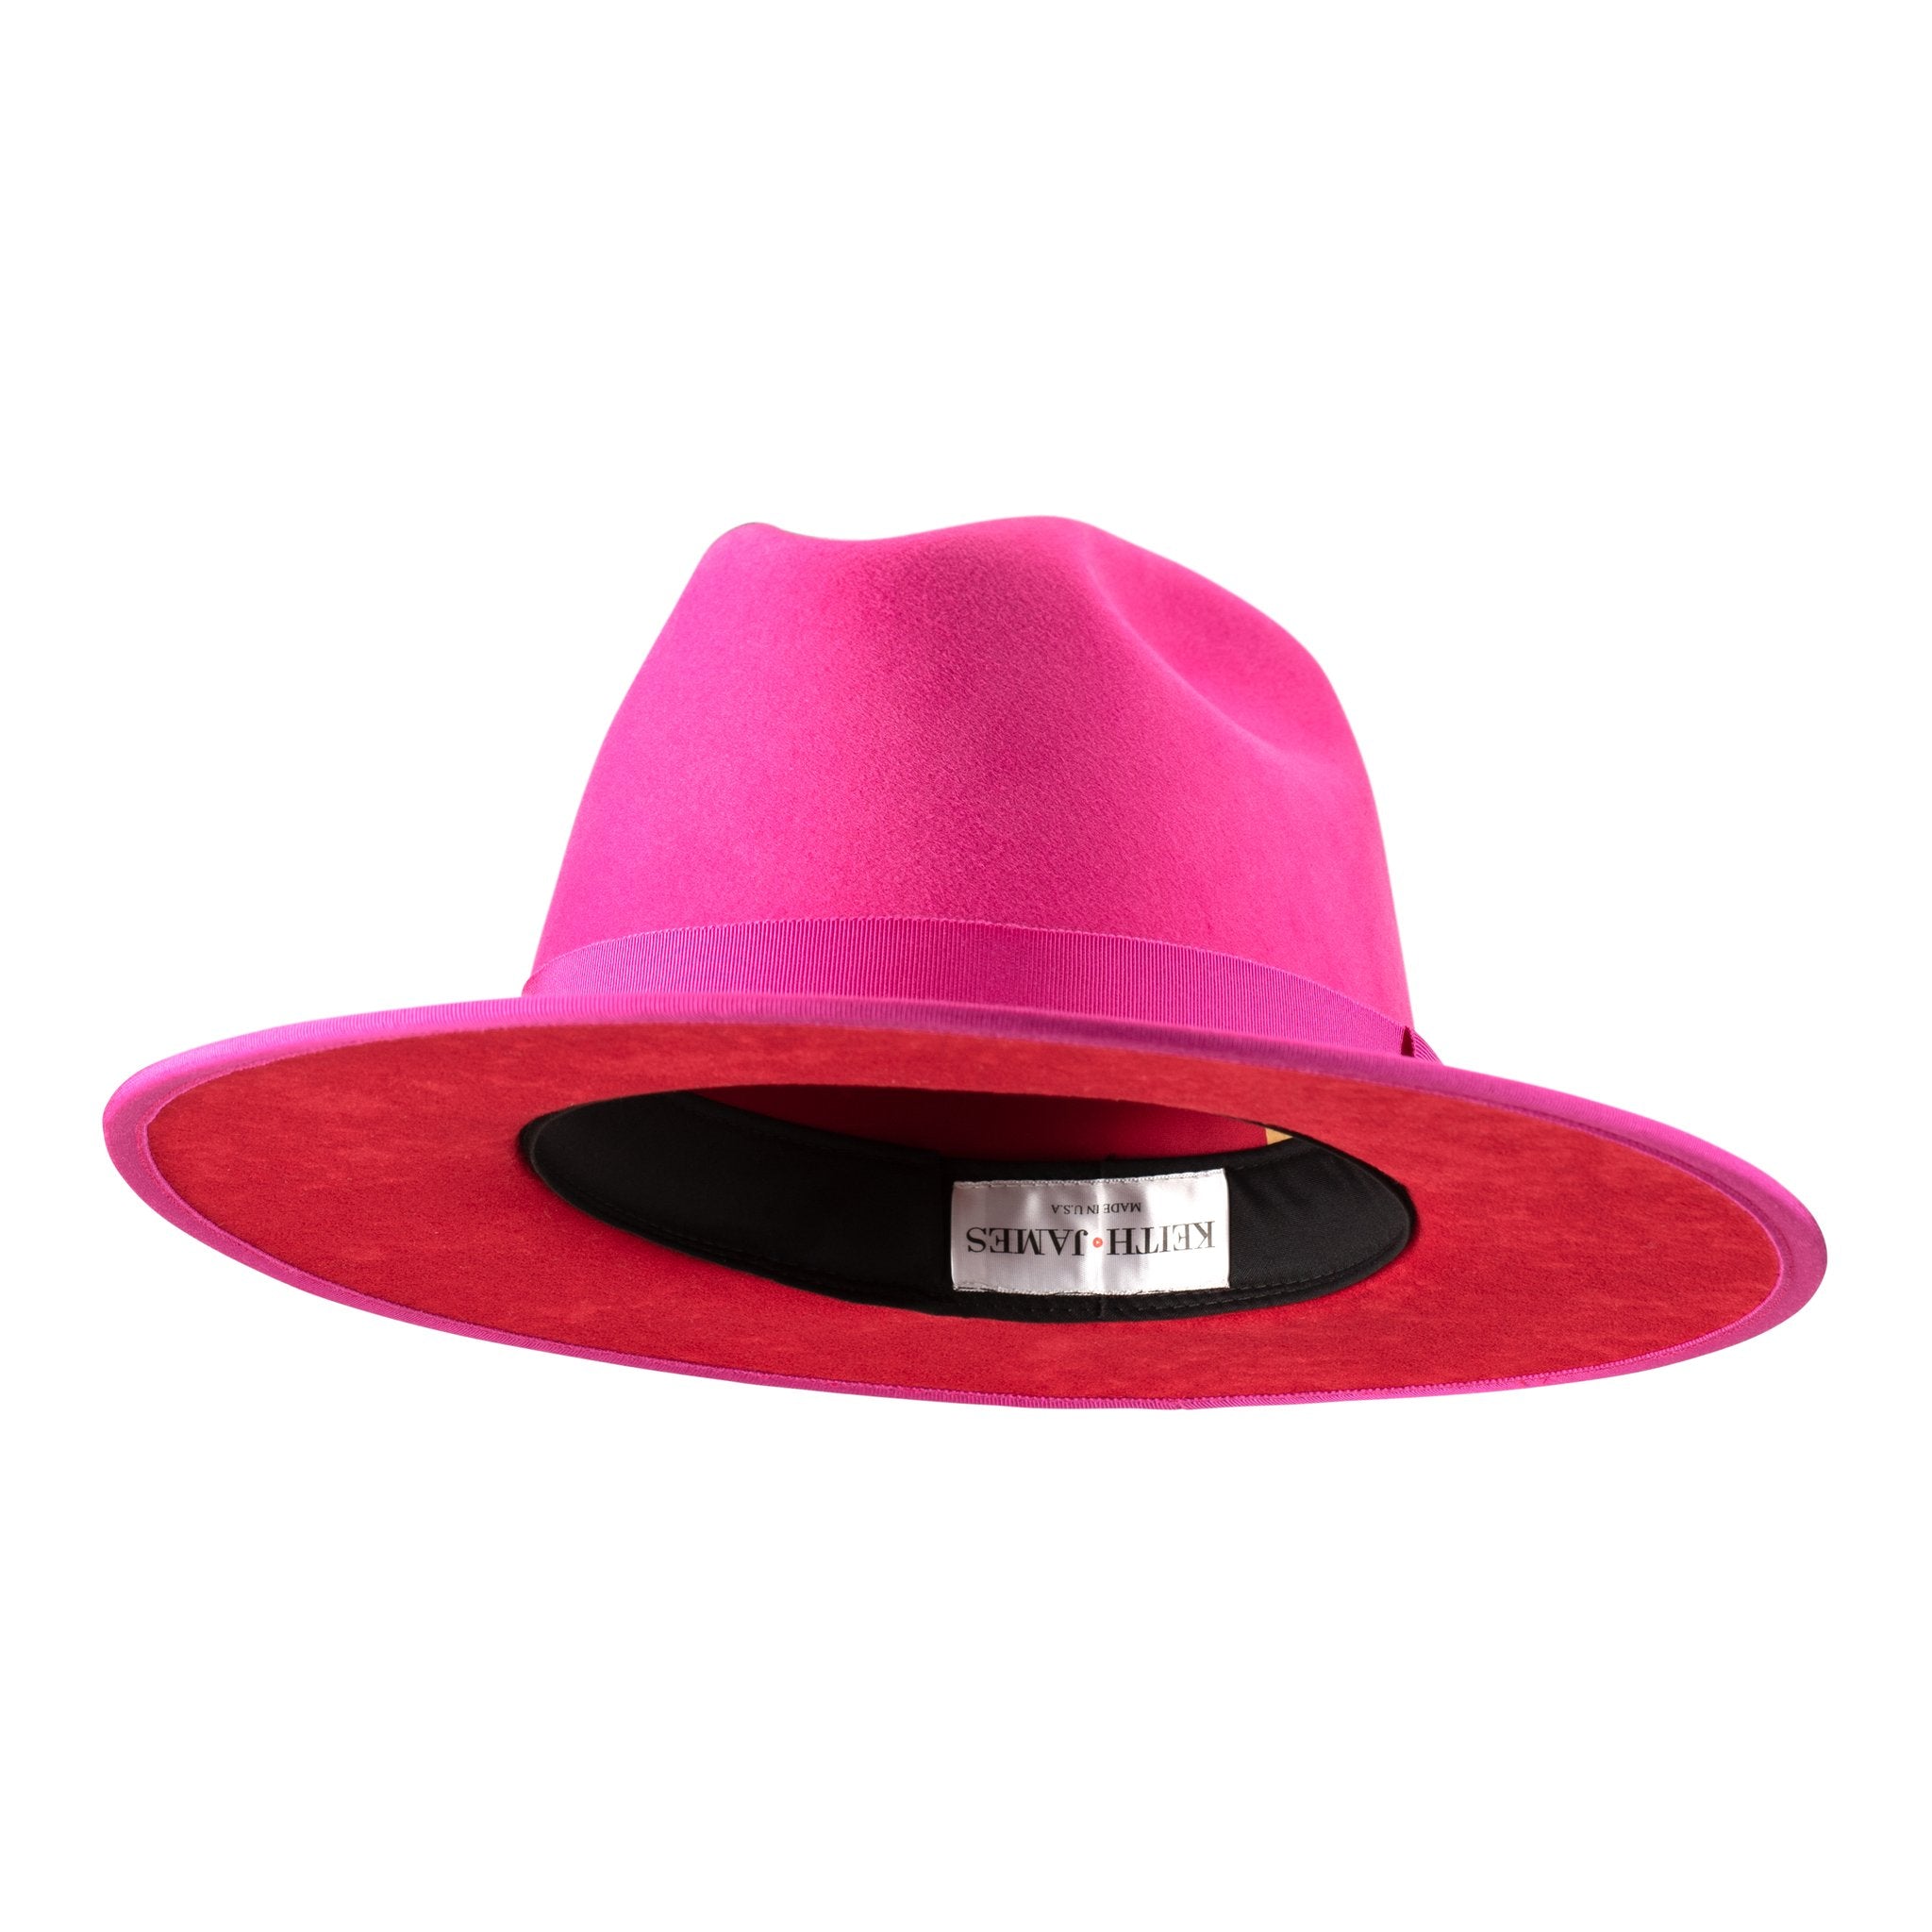 DaBaby Hot Pink  Fedora Hat Red Under Brim